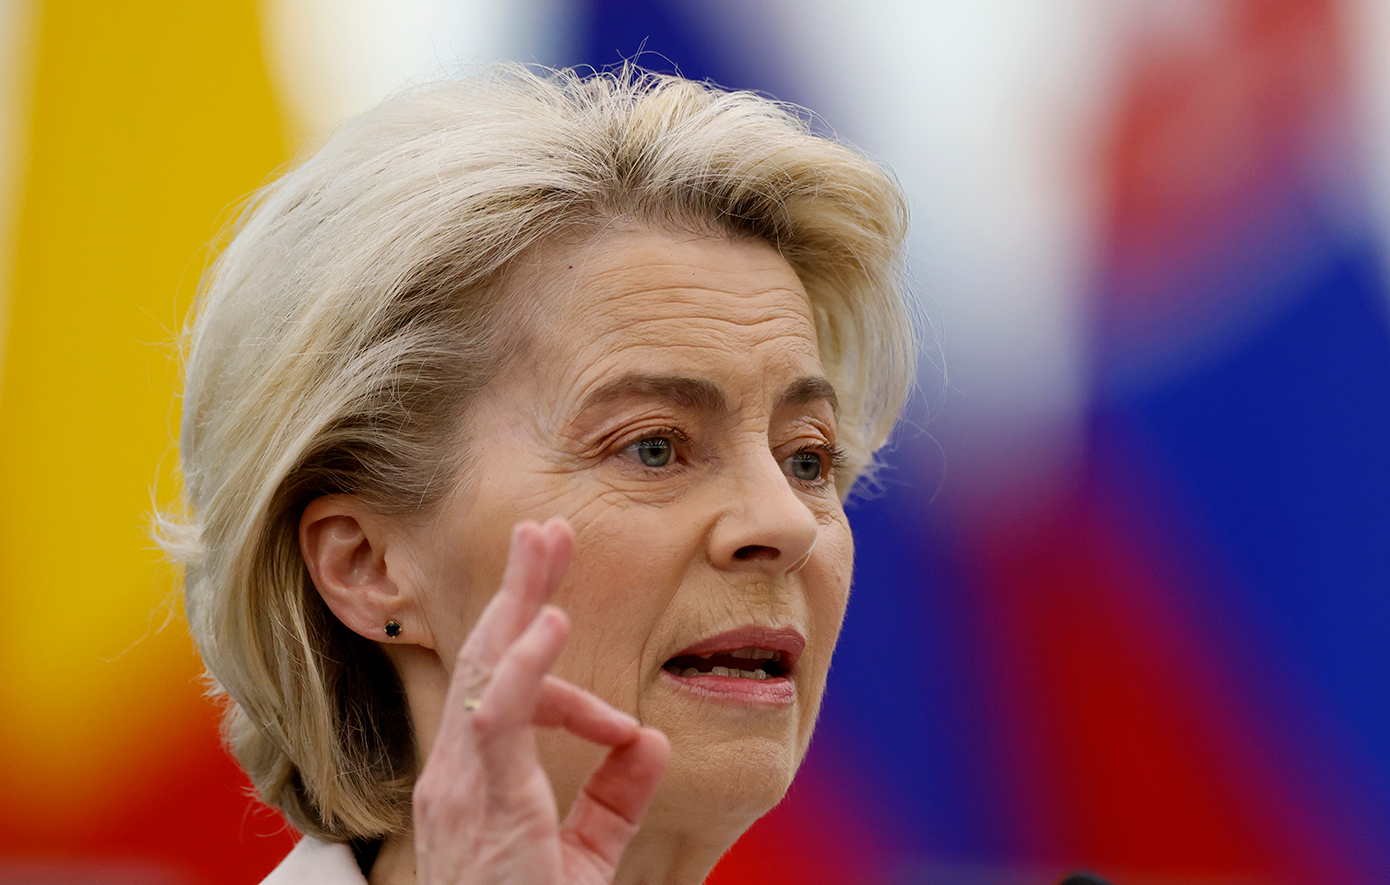 Πρώτη τηλεμαχία για τις ευρωεκλογές: «Θέλω μια Ευρώπη ισχυρή», τόνισε η Ούρσουλα φον ντερ Λάιεν